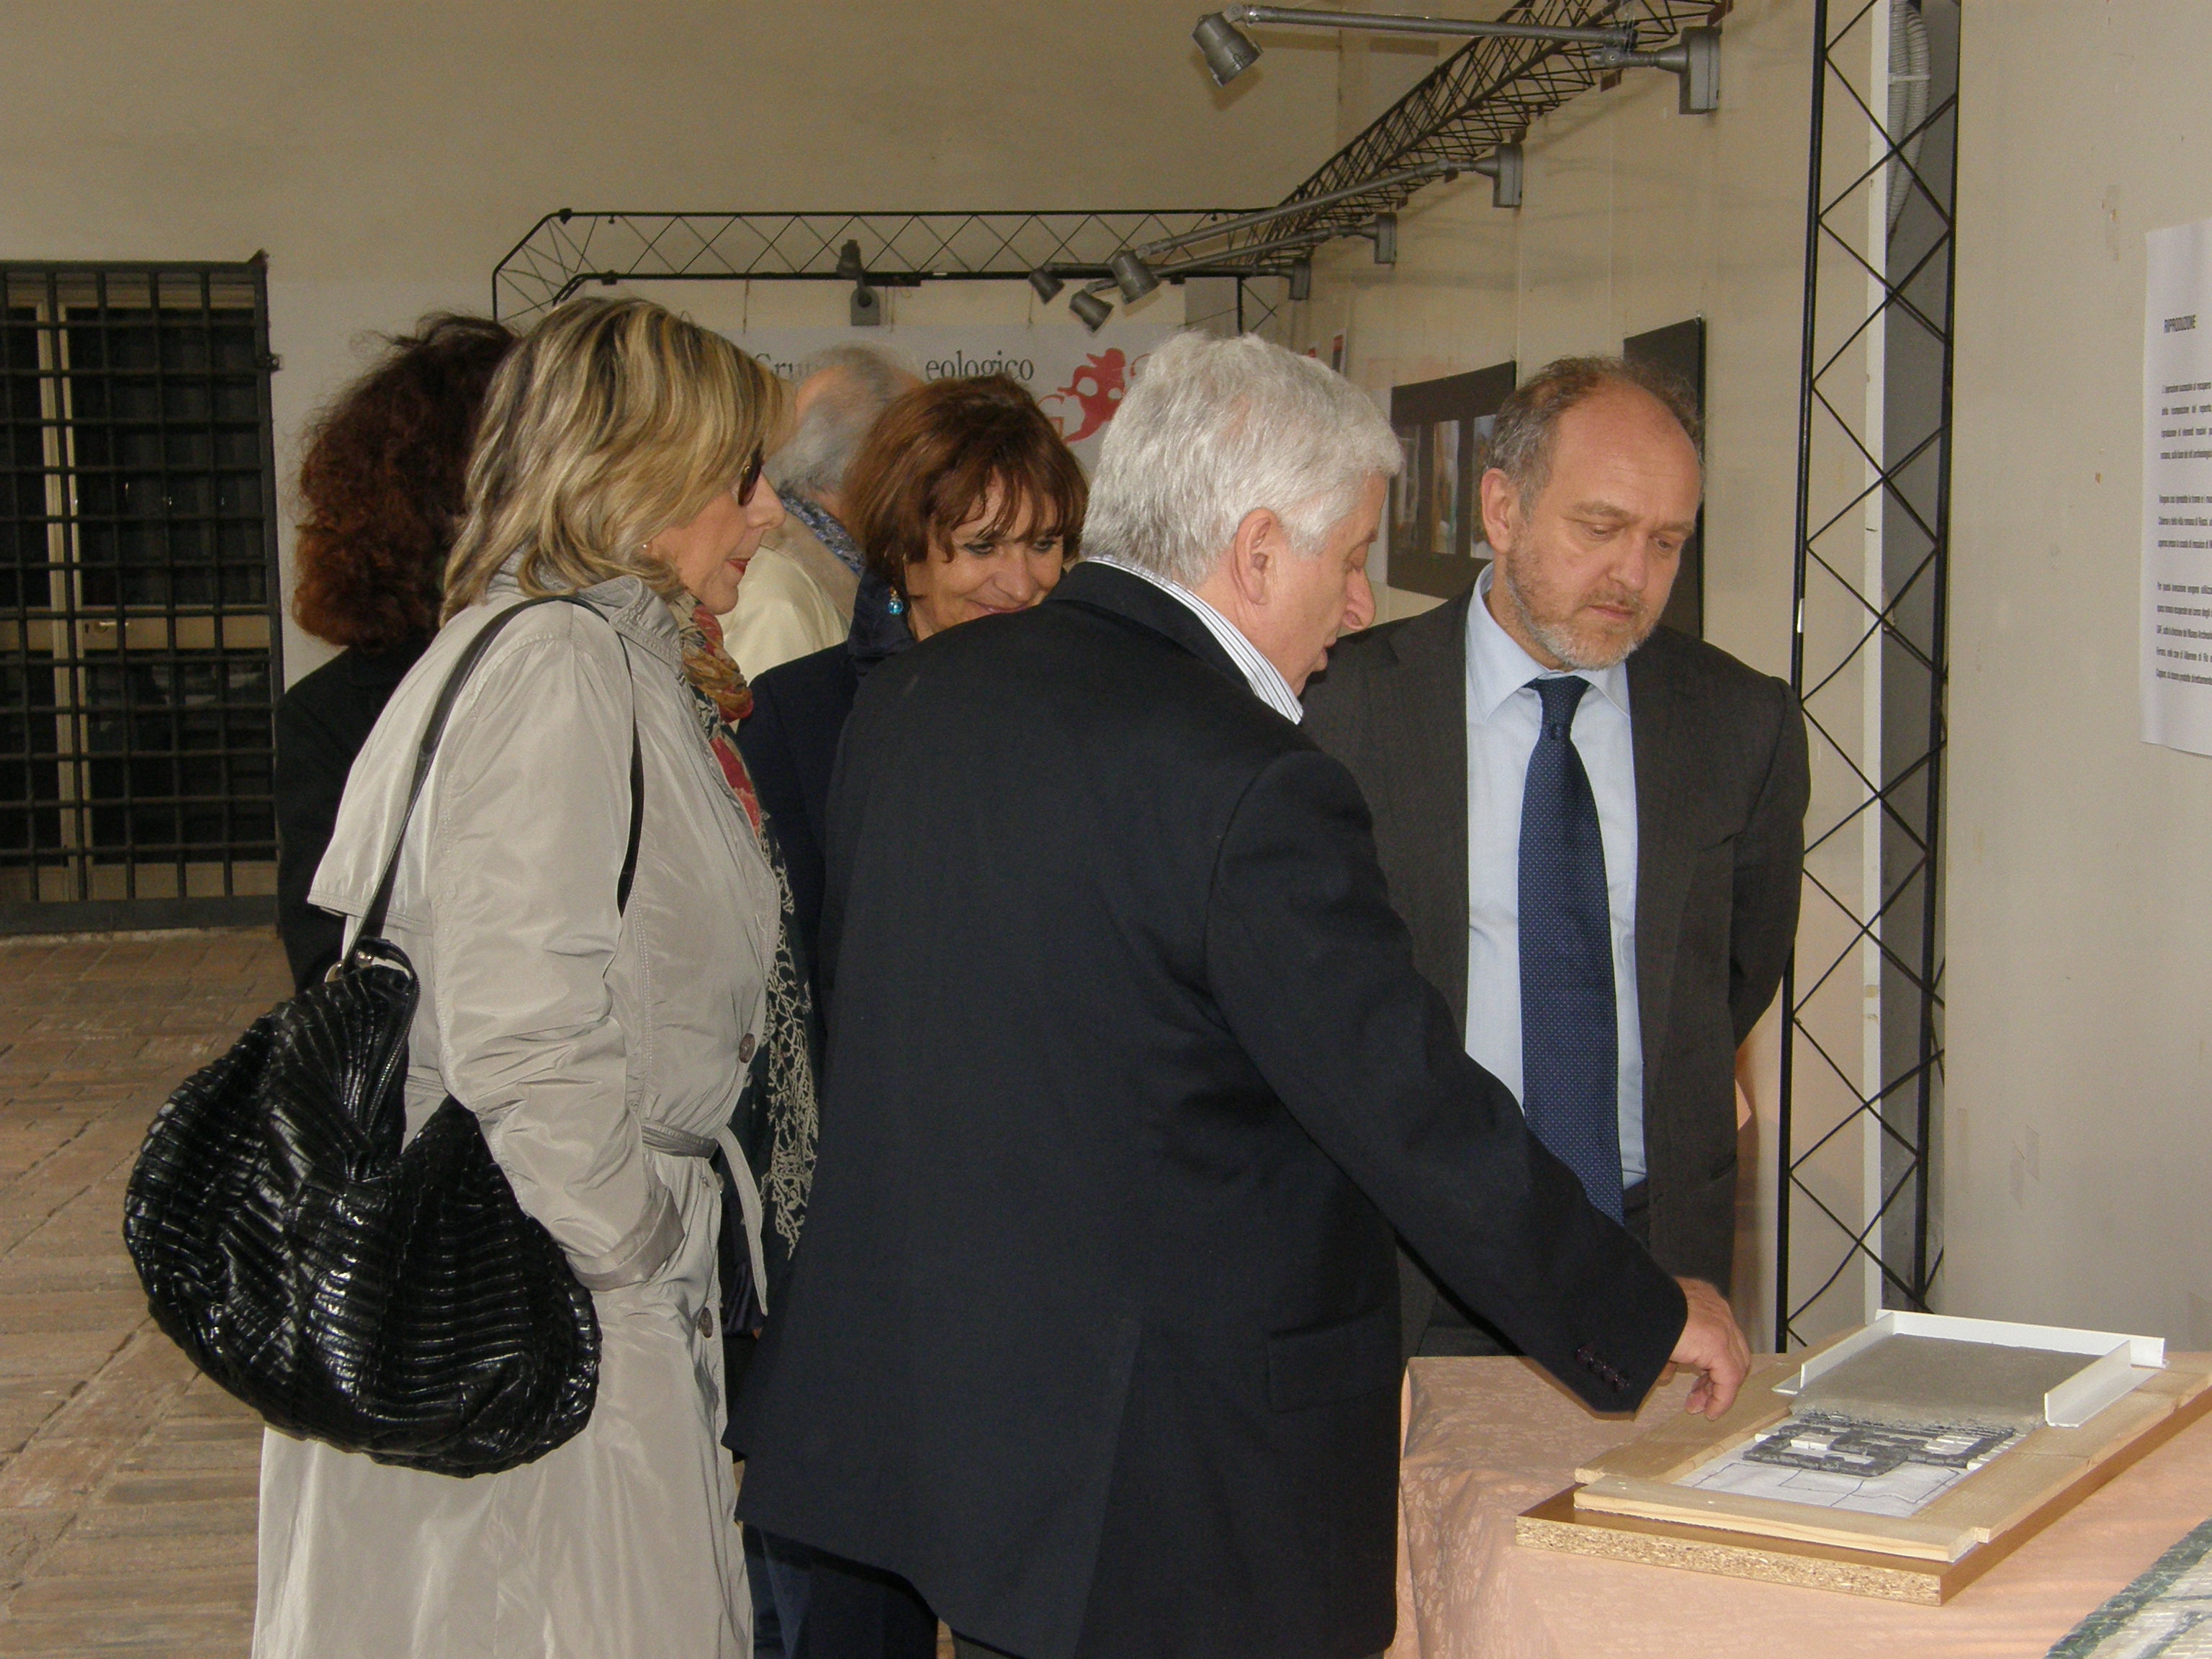 Foto- Inaugurazione della mostra/laboratorio " Mettiamo insieme i cocci" 4 aprile 2012